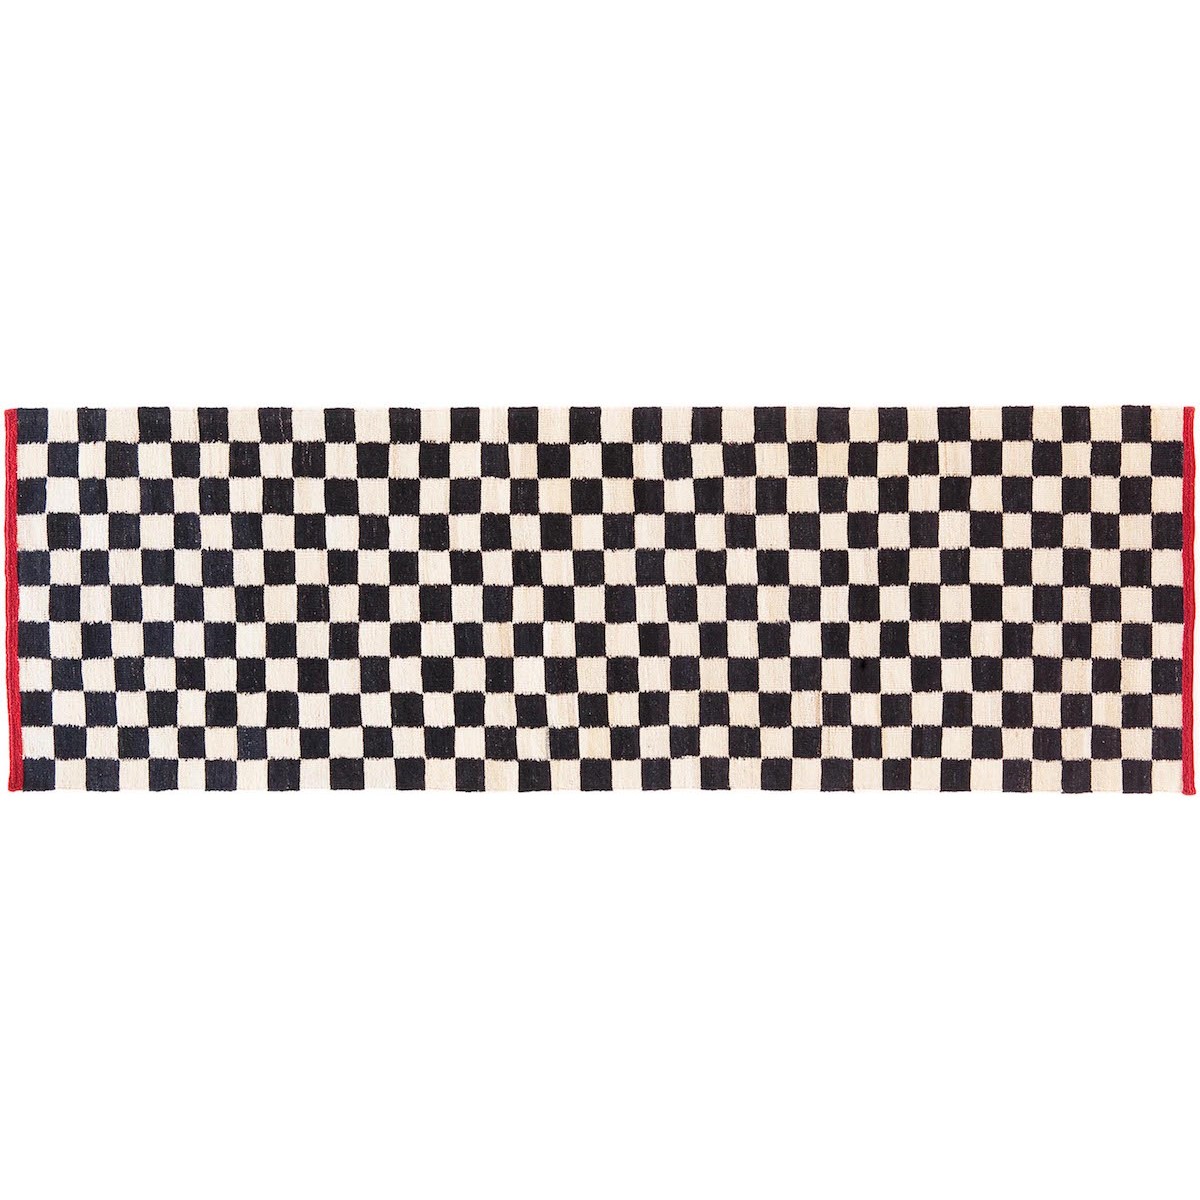 80x240cm - Melange Pattern 4 rug